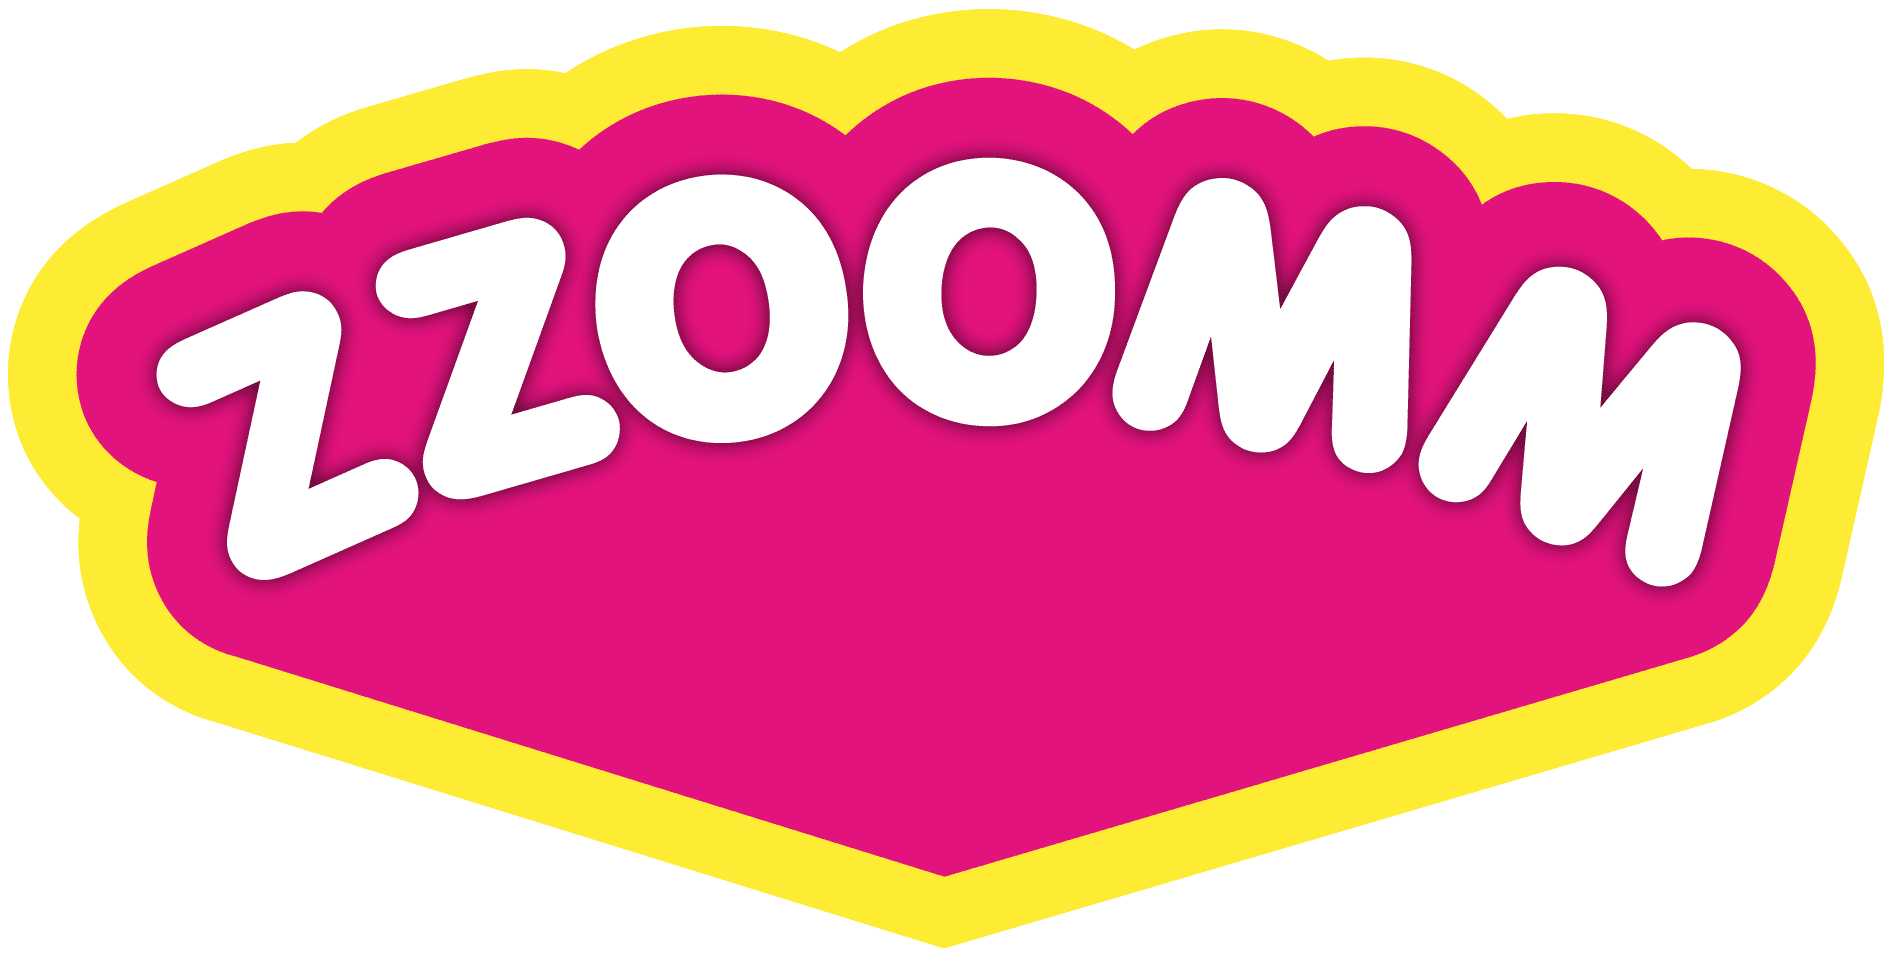 Logo: Zzoomm